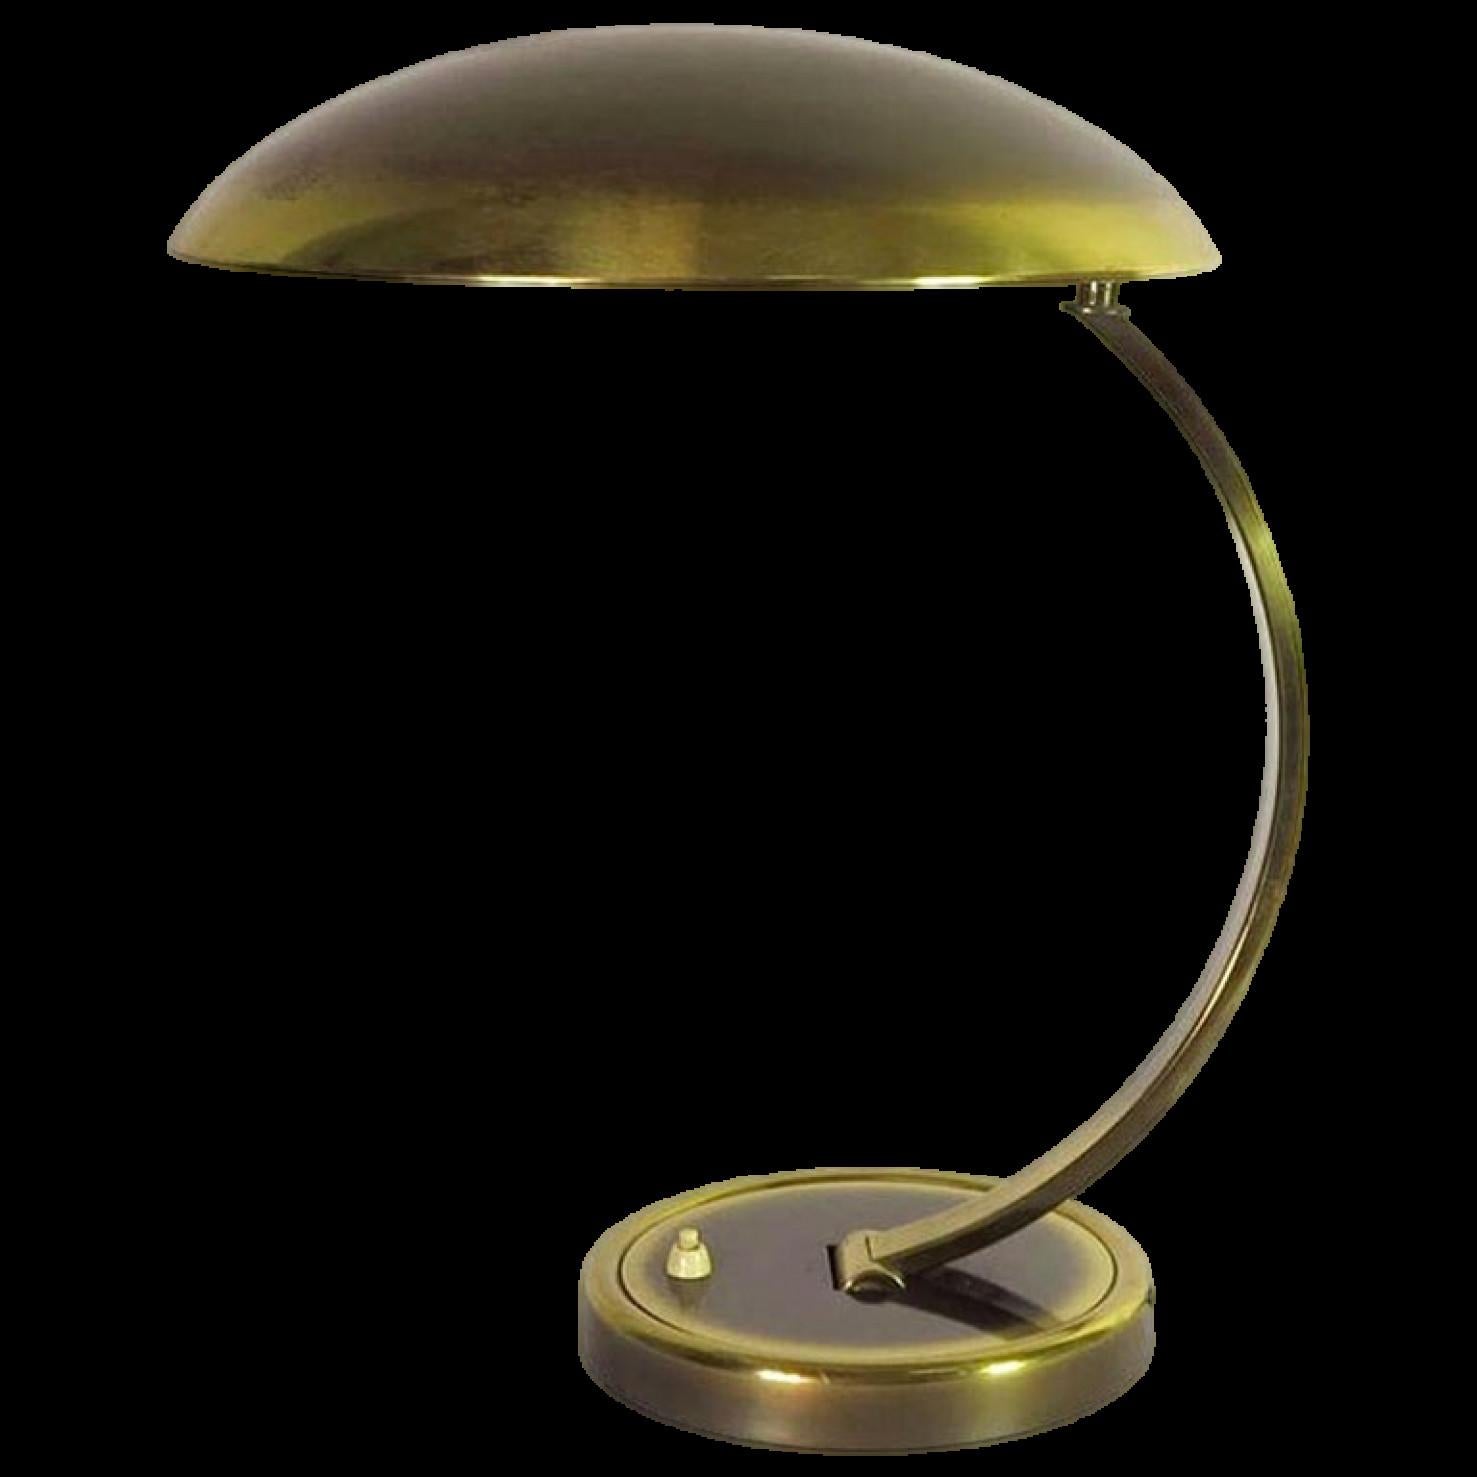 Cette magnifique lampe de table en laiton patiné a été conçue par Christian Dell et produite par Kaiser Idell dans les années 1950. Le bras et l'abat-jour sont tous deux réglables.

Christian Dell, designer industriel, orfèvre et enseignant, est né